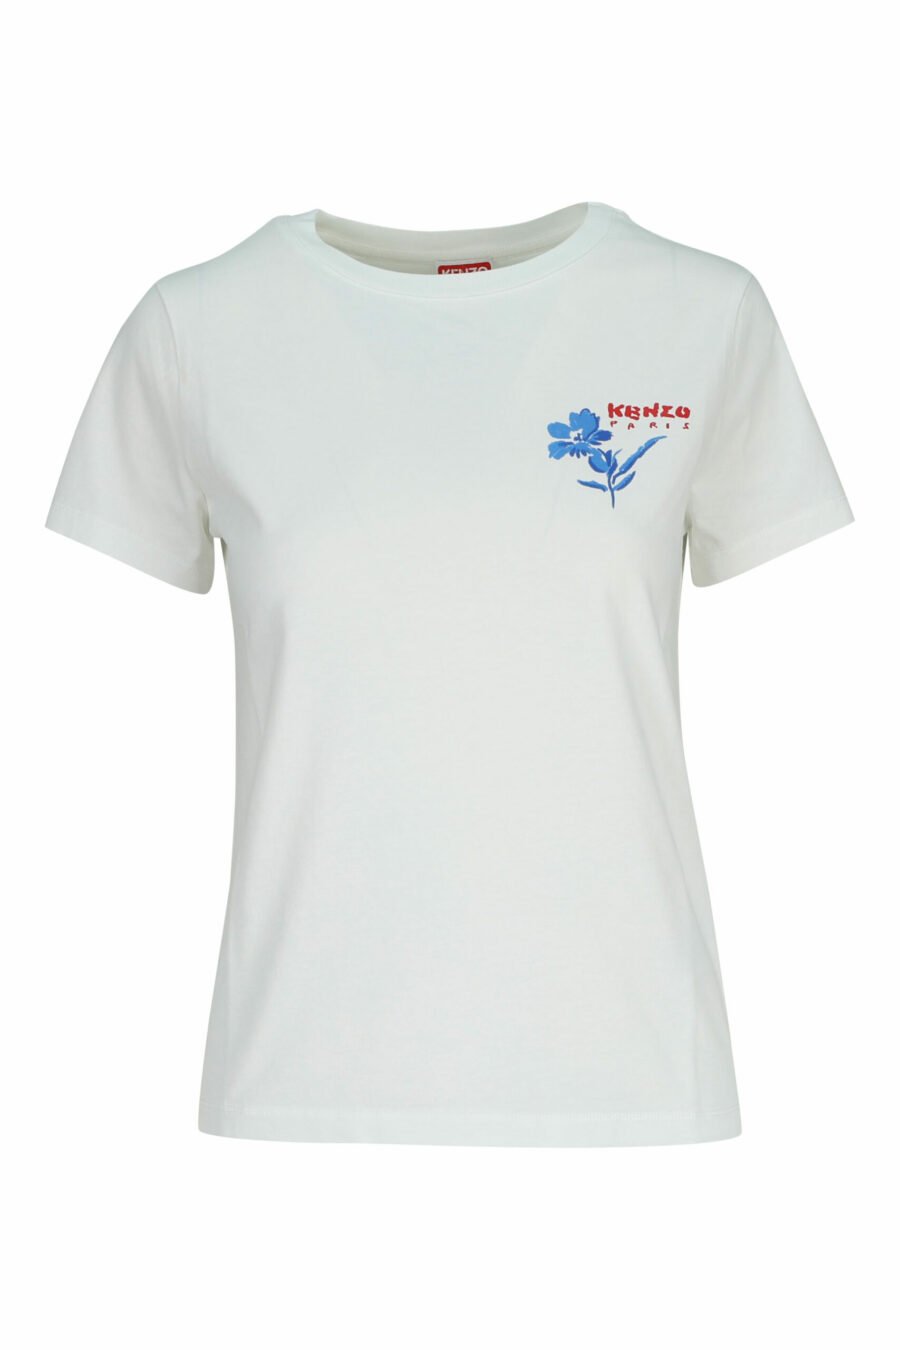 T-shirt blanc avec minilogo "fleur dessinée" - 3612230587281 scaled